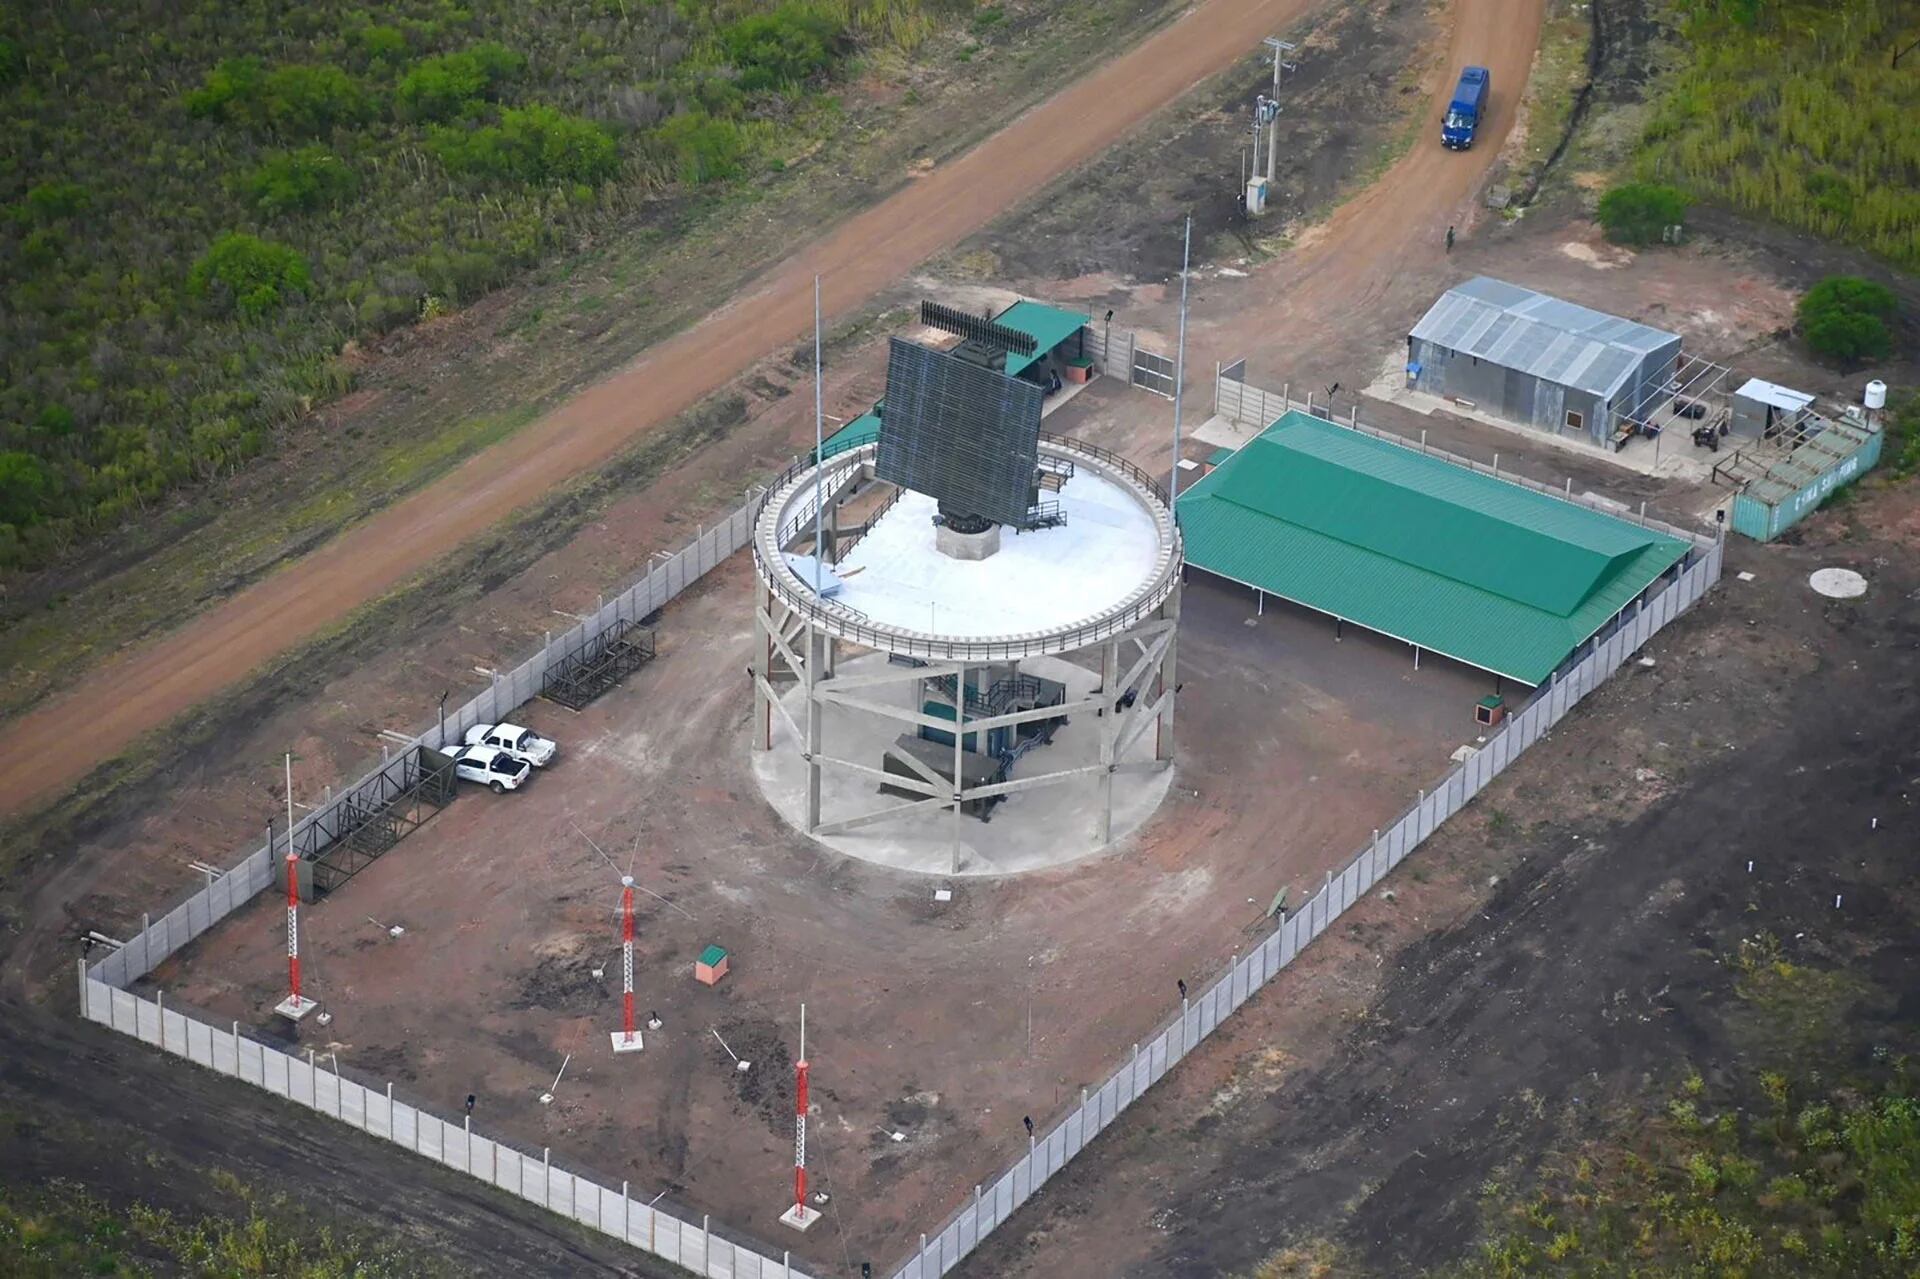 Estación aérea y radar Villaguay, Entre Rios